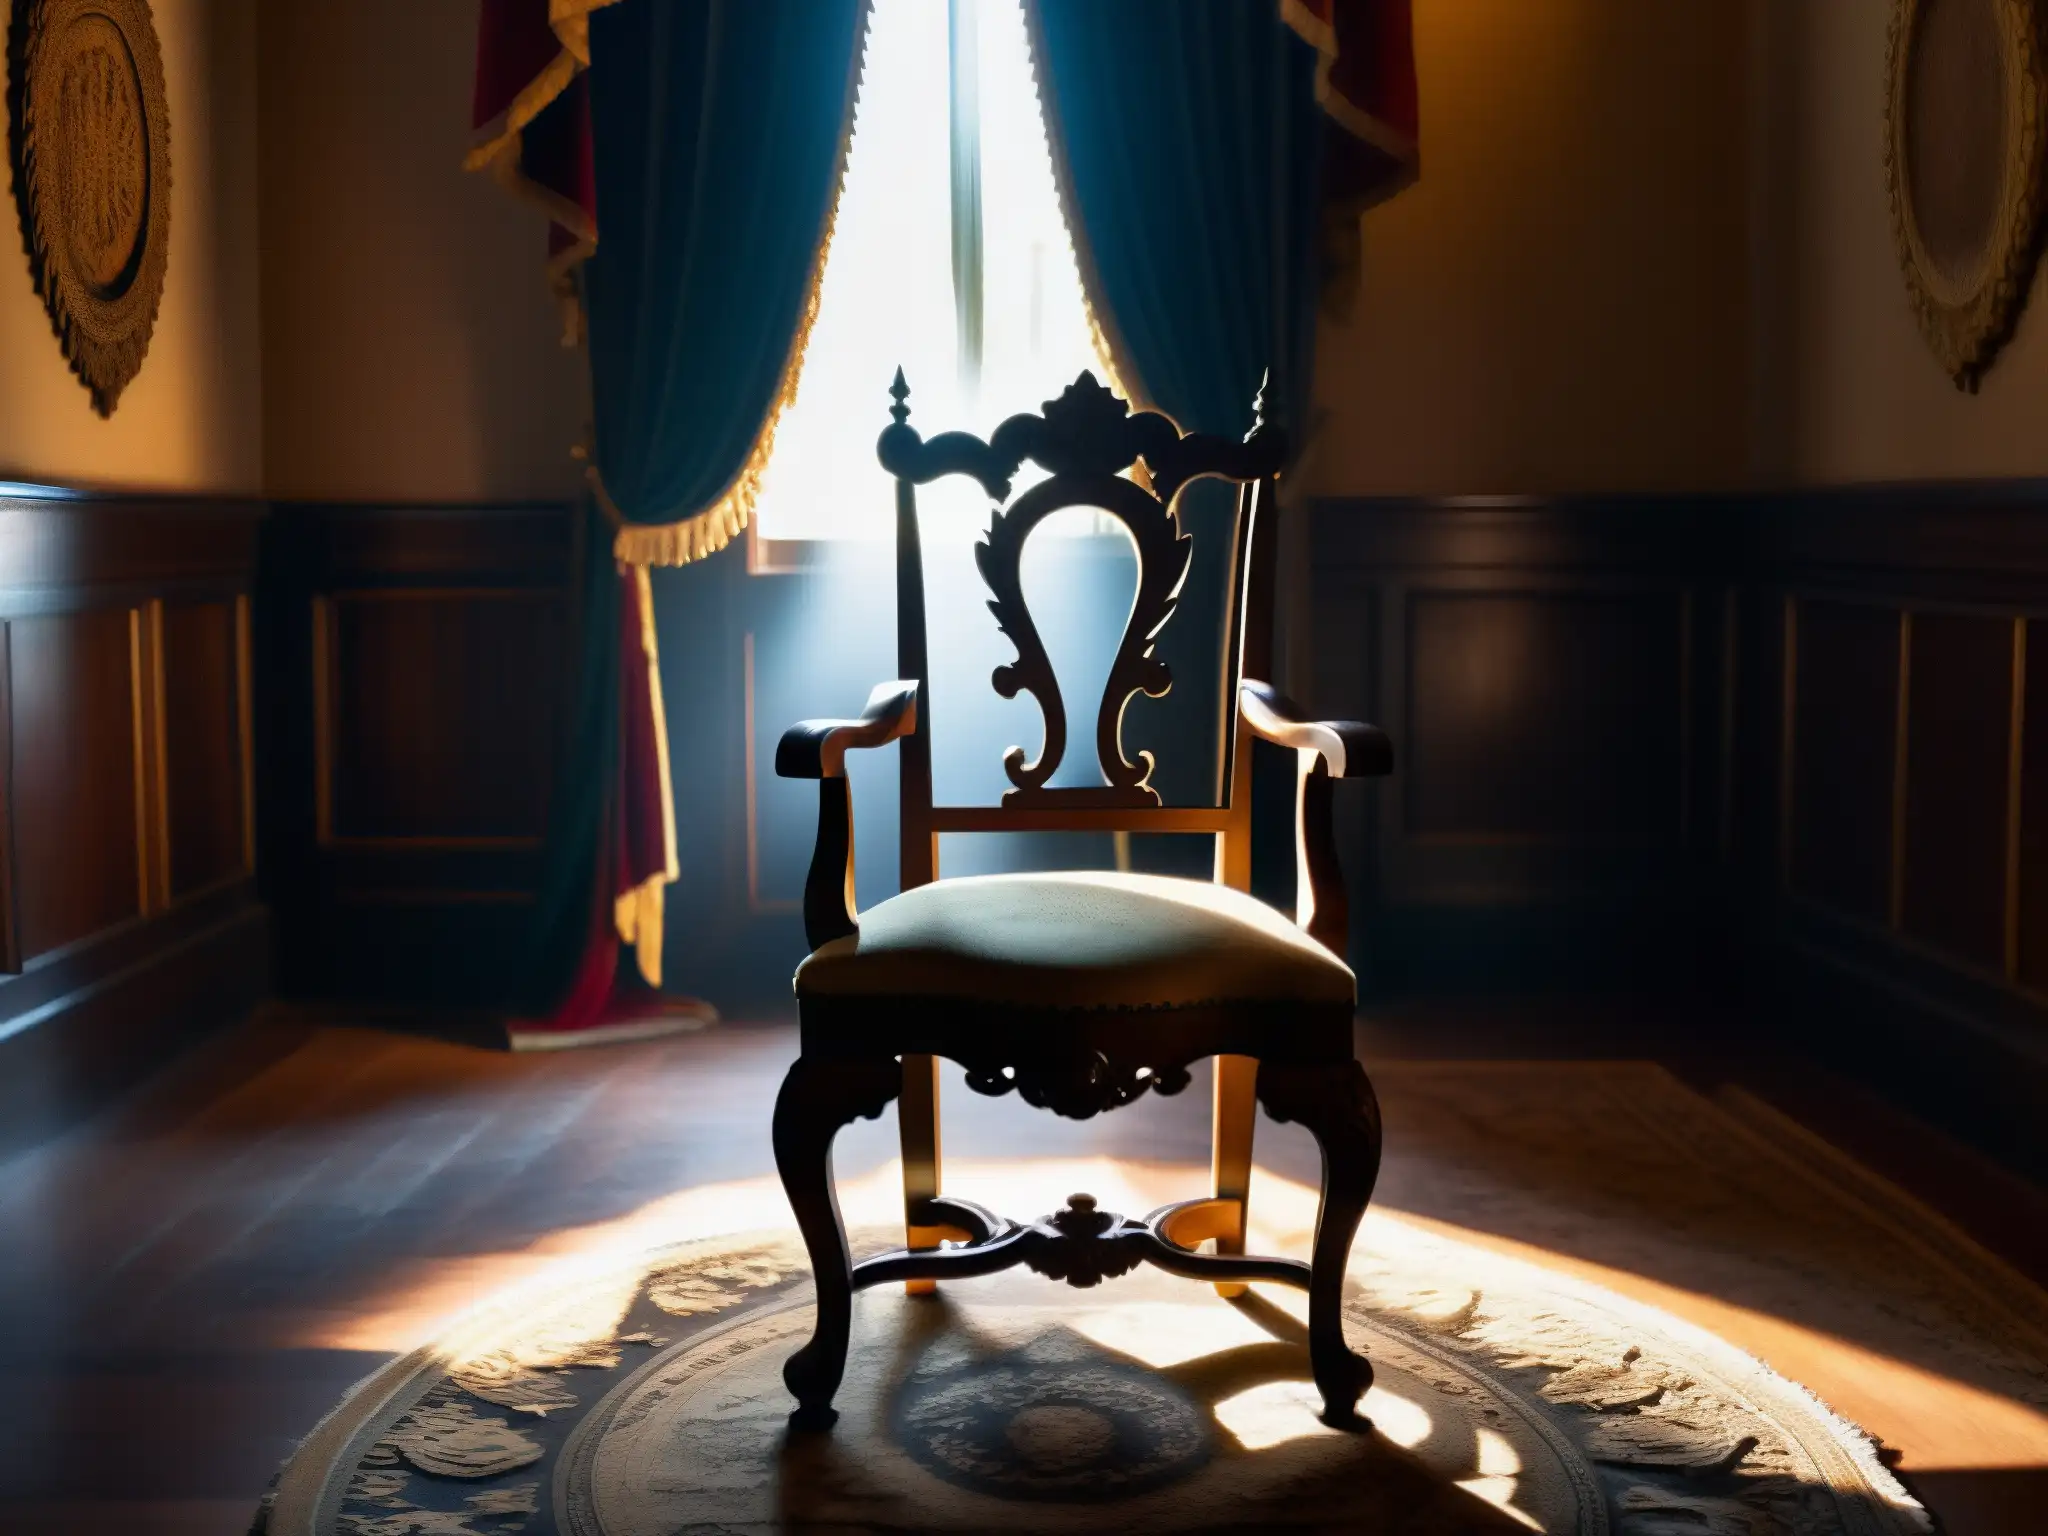 Una silla presidencial envuelta en misterio y superstición, rodeada de sombras y figuras fantasmales